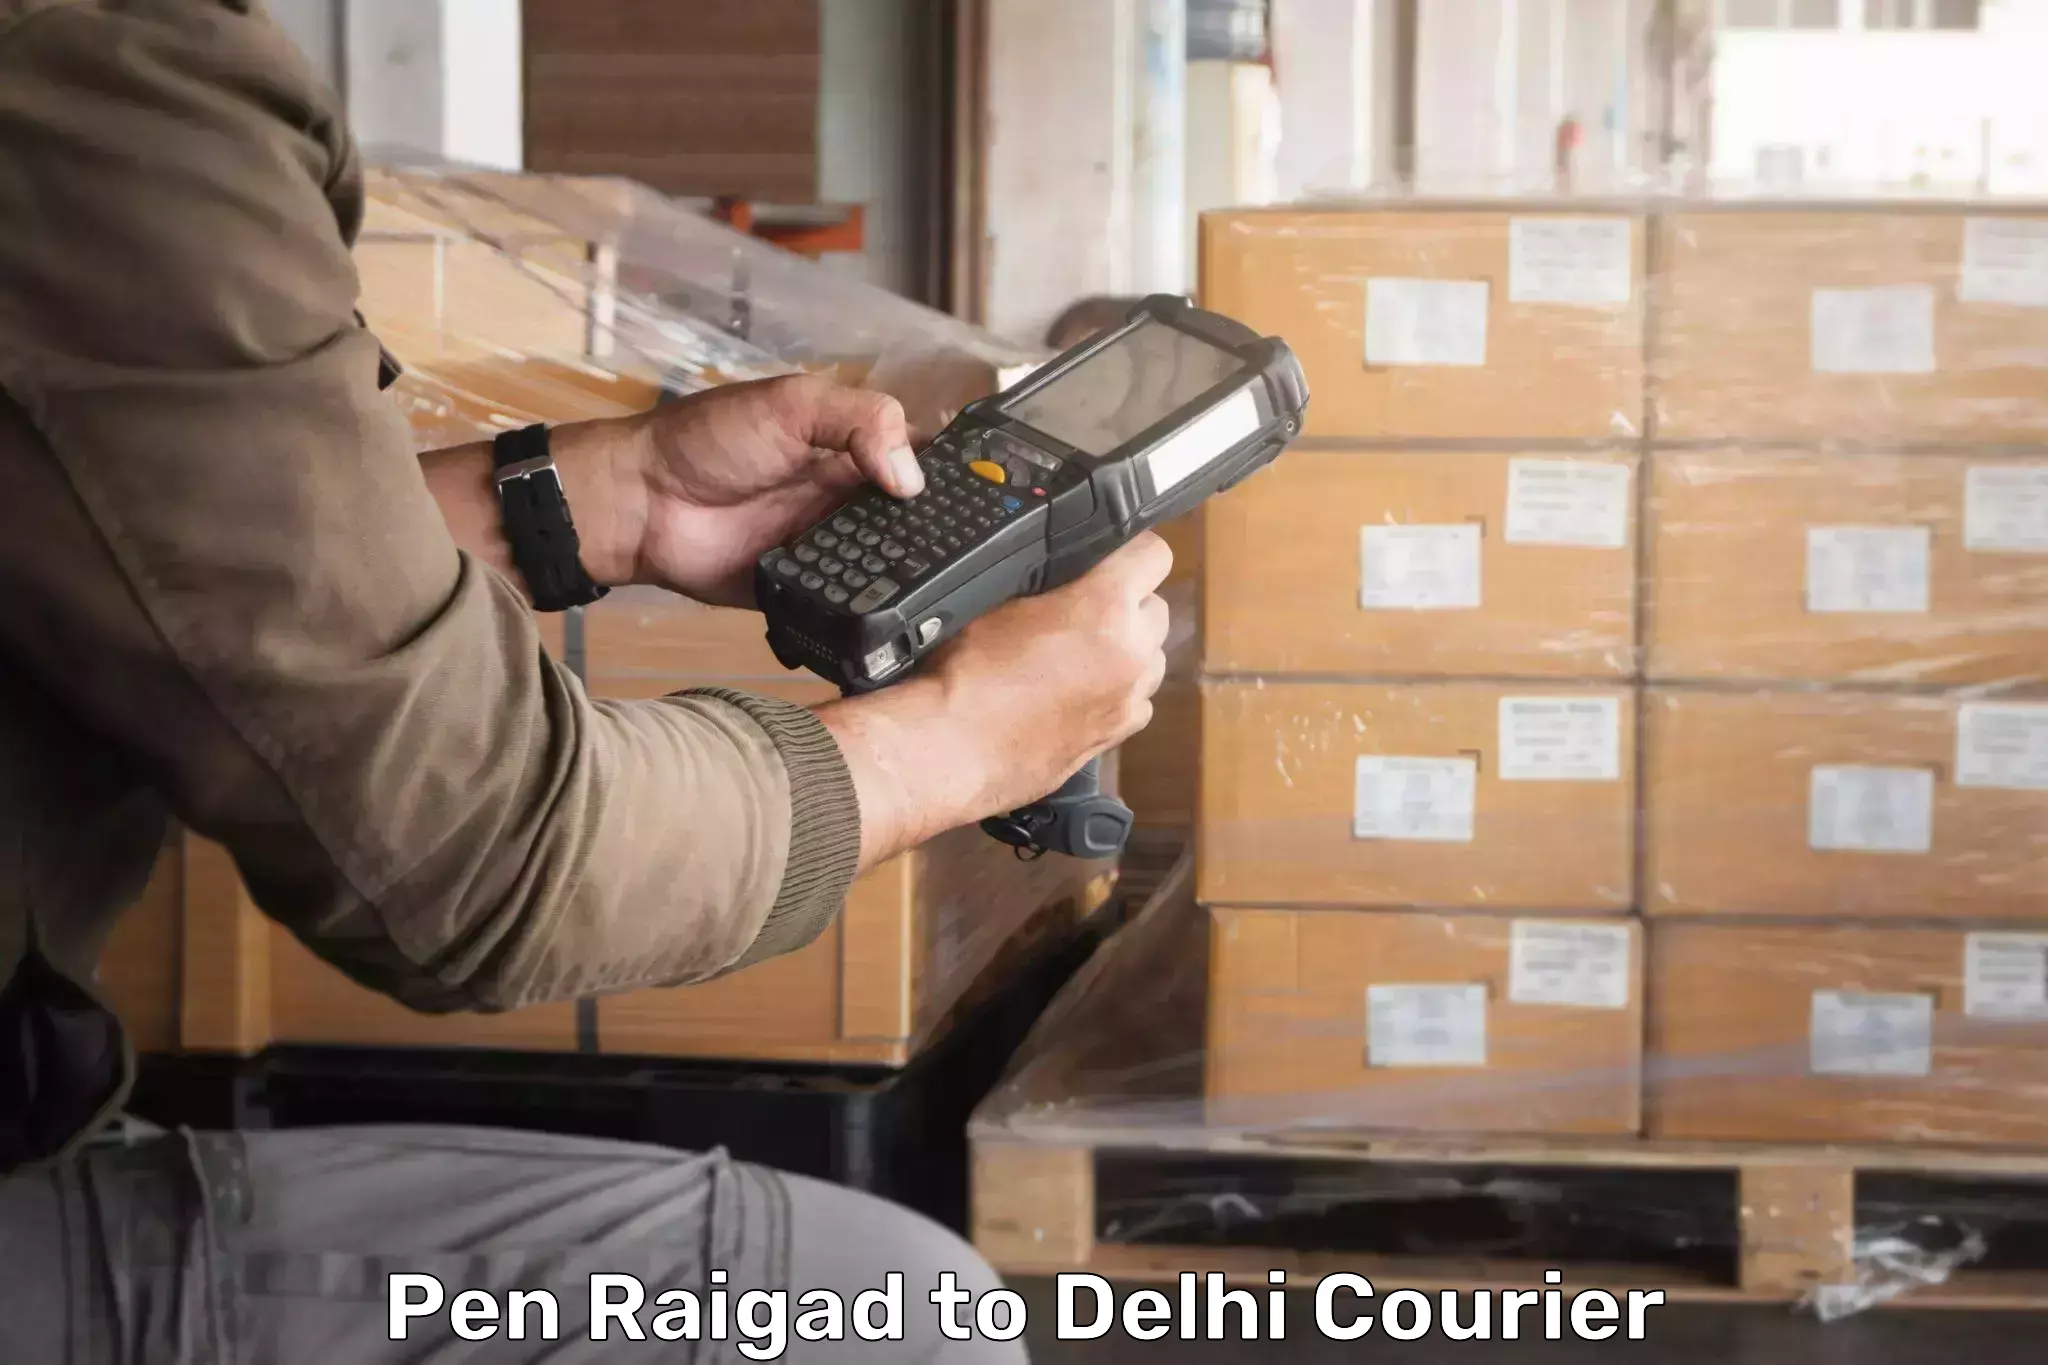 Express shipping Pen Raigad to Jamia Millia Islamia New Delhi